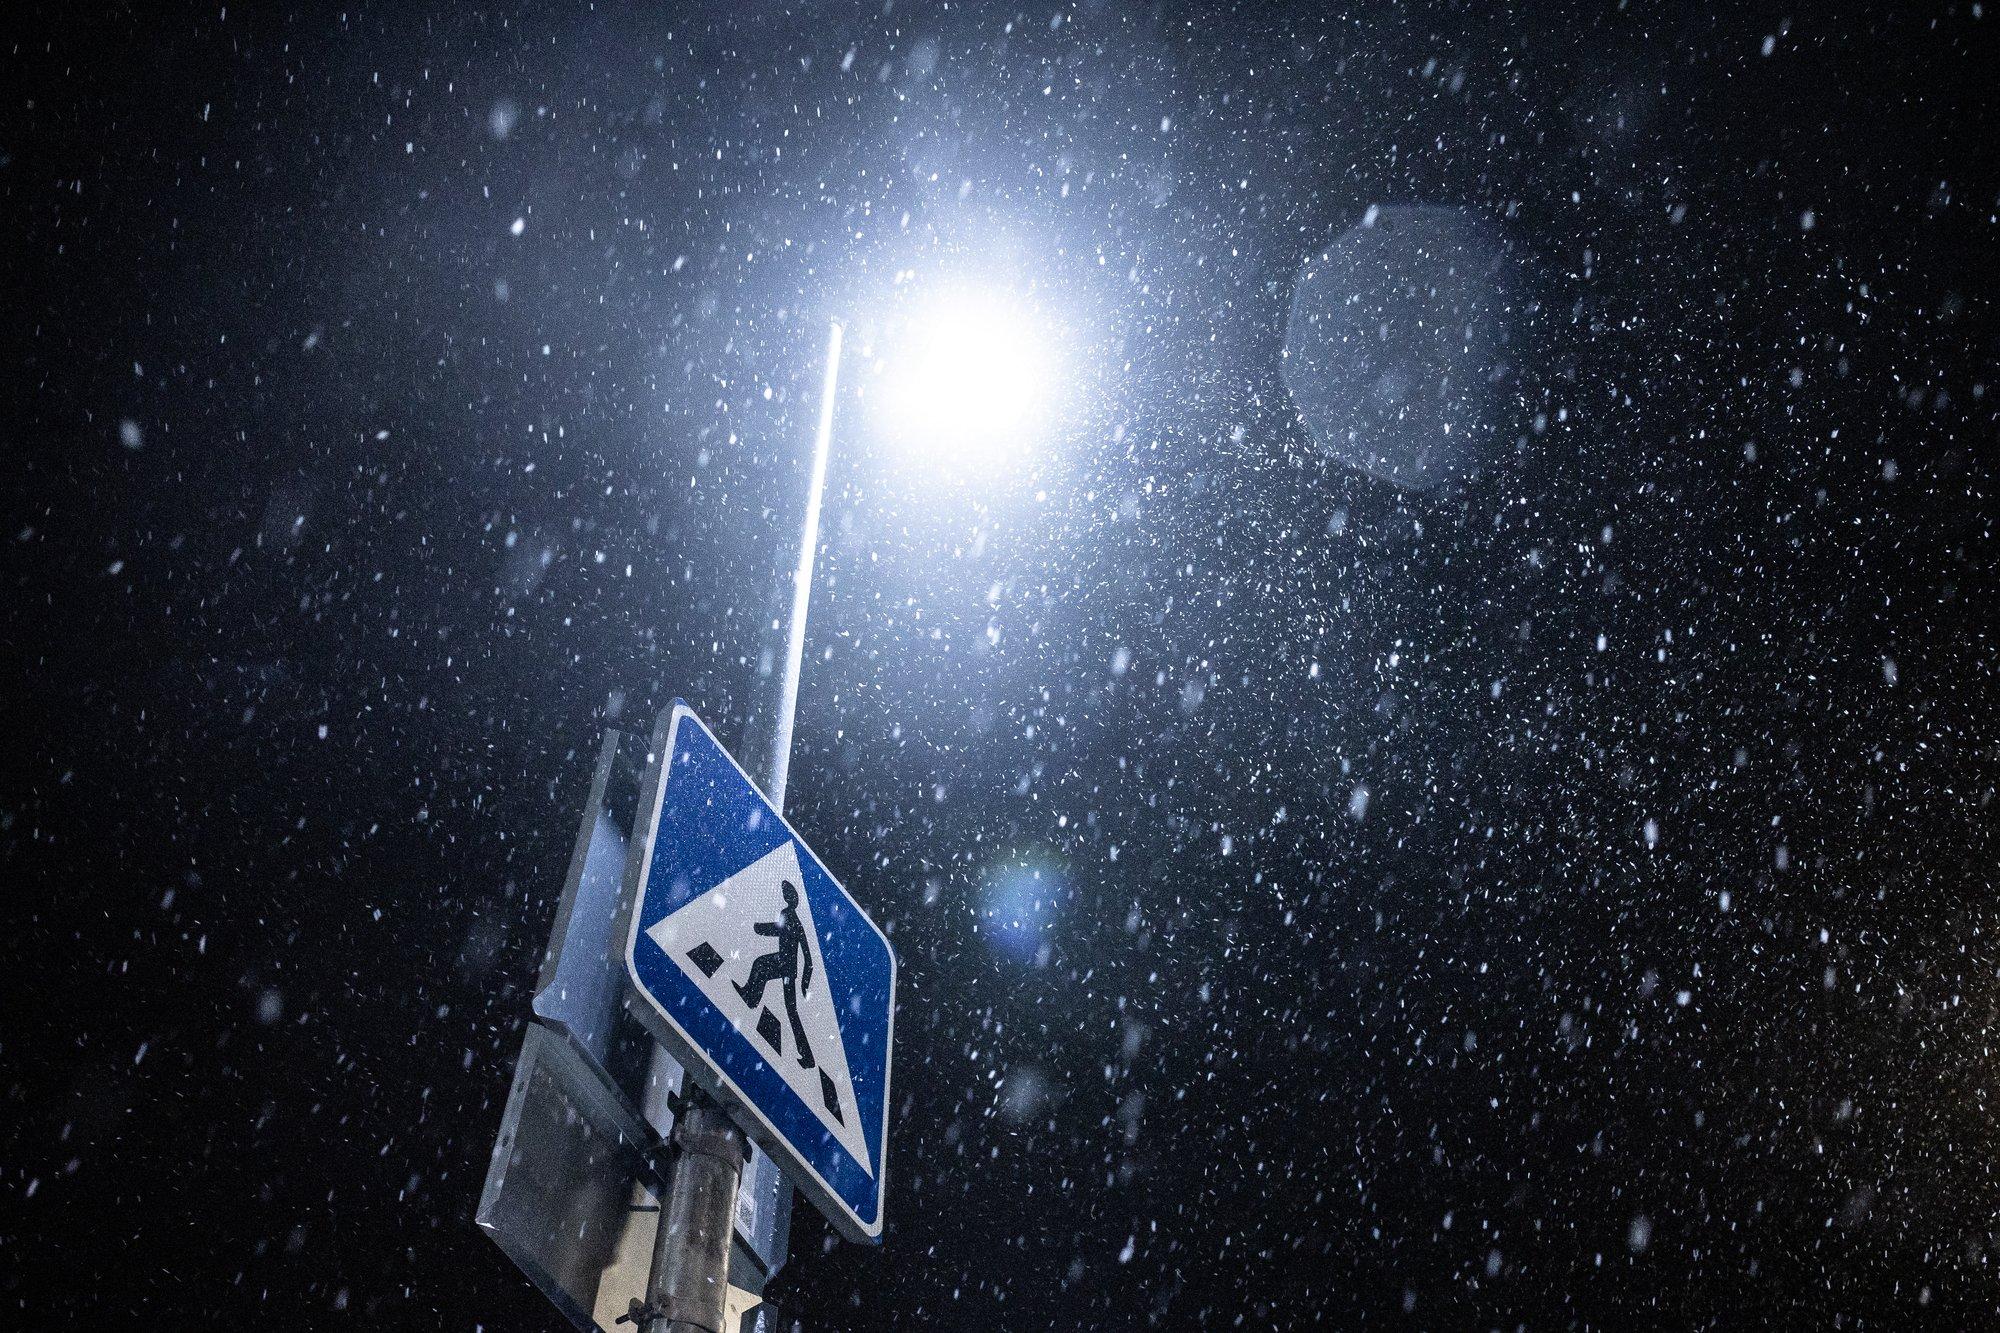 Maikuu külm pale: paari päeva pärast sajab Eestis taas lund ja lörtsi